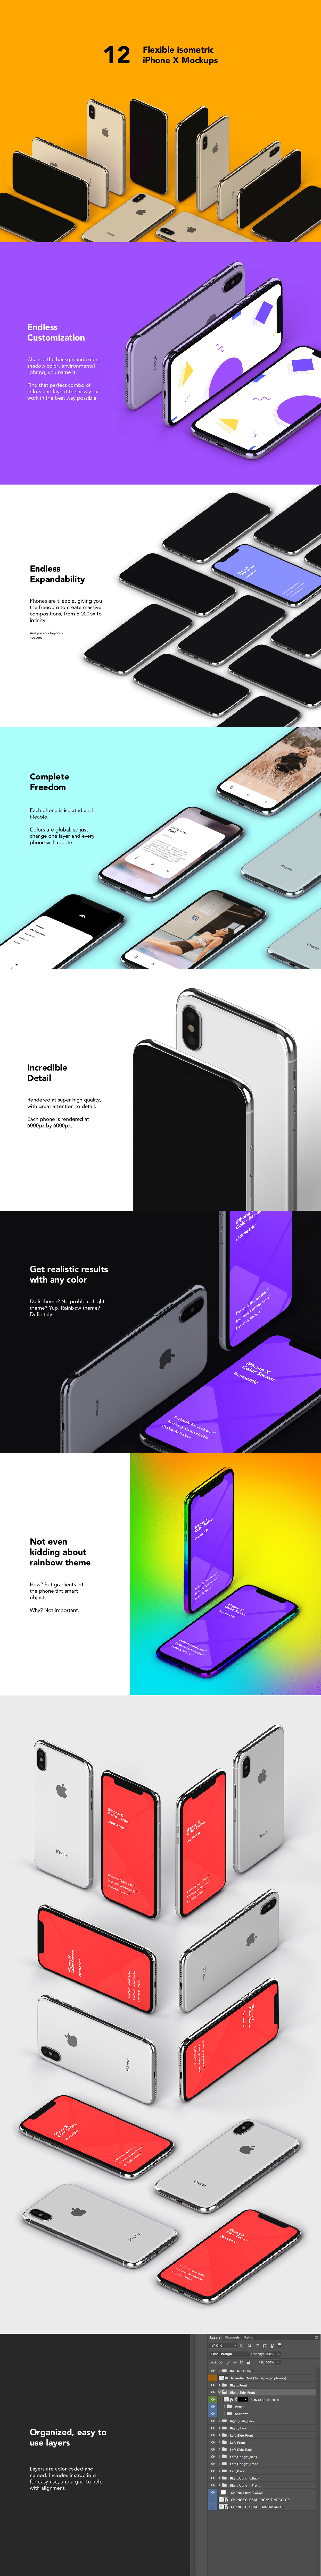 非凡图库下午茶：质感超强的多角度iPhone X APP UI设计展示模型Mockups下载[PSD]插图